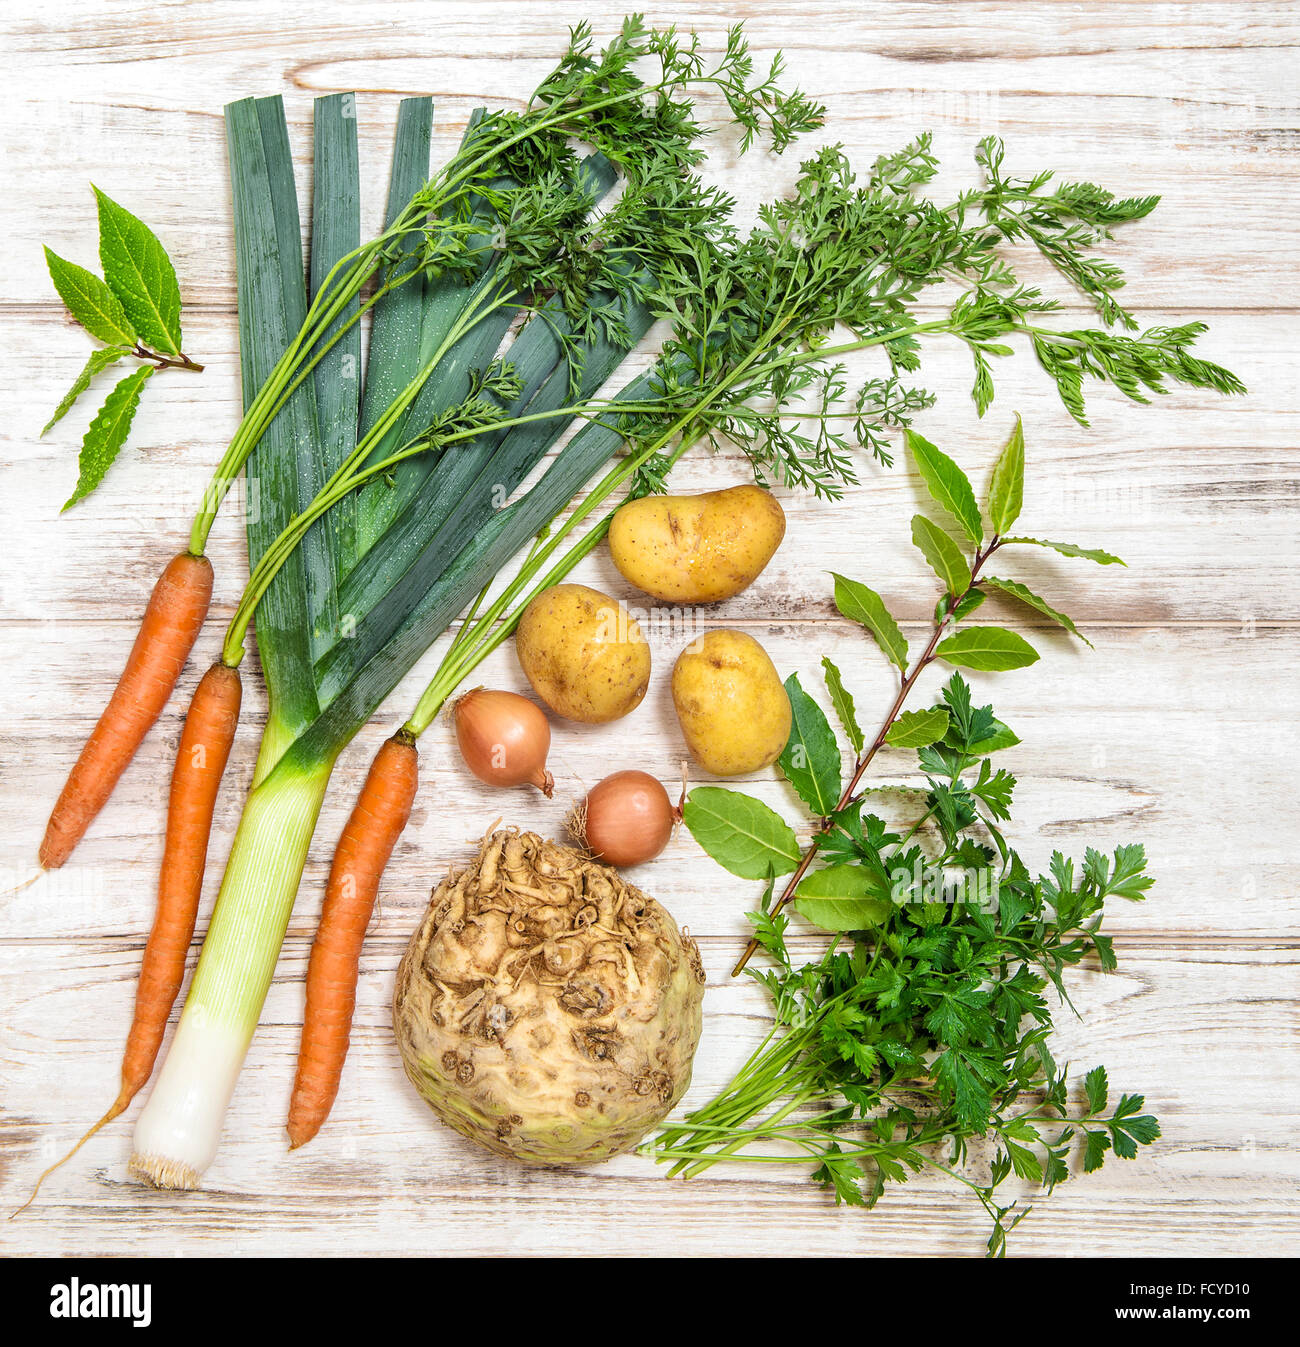 Les légumes frais. Une saine alimentation biologique. Poireau, carotte, oignon, persil, pommes de terre, Céleri, Feuilles de laurier bay Banque D'Images